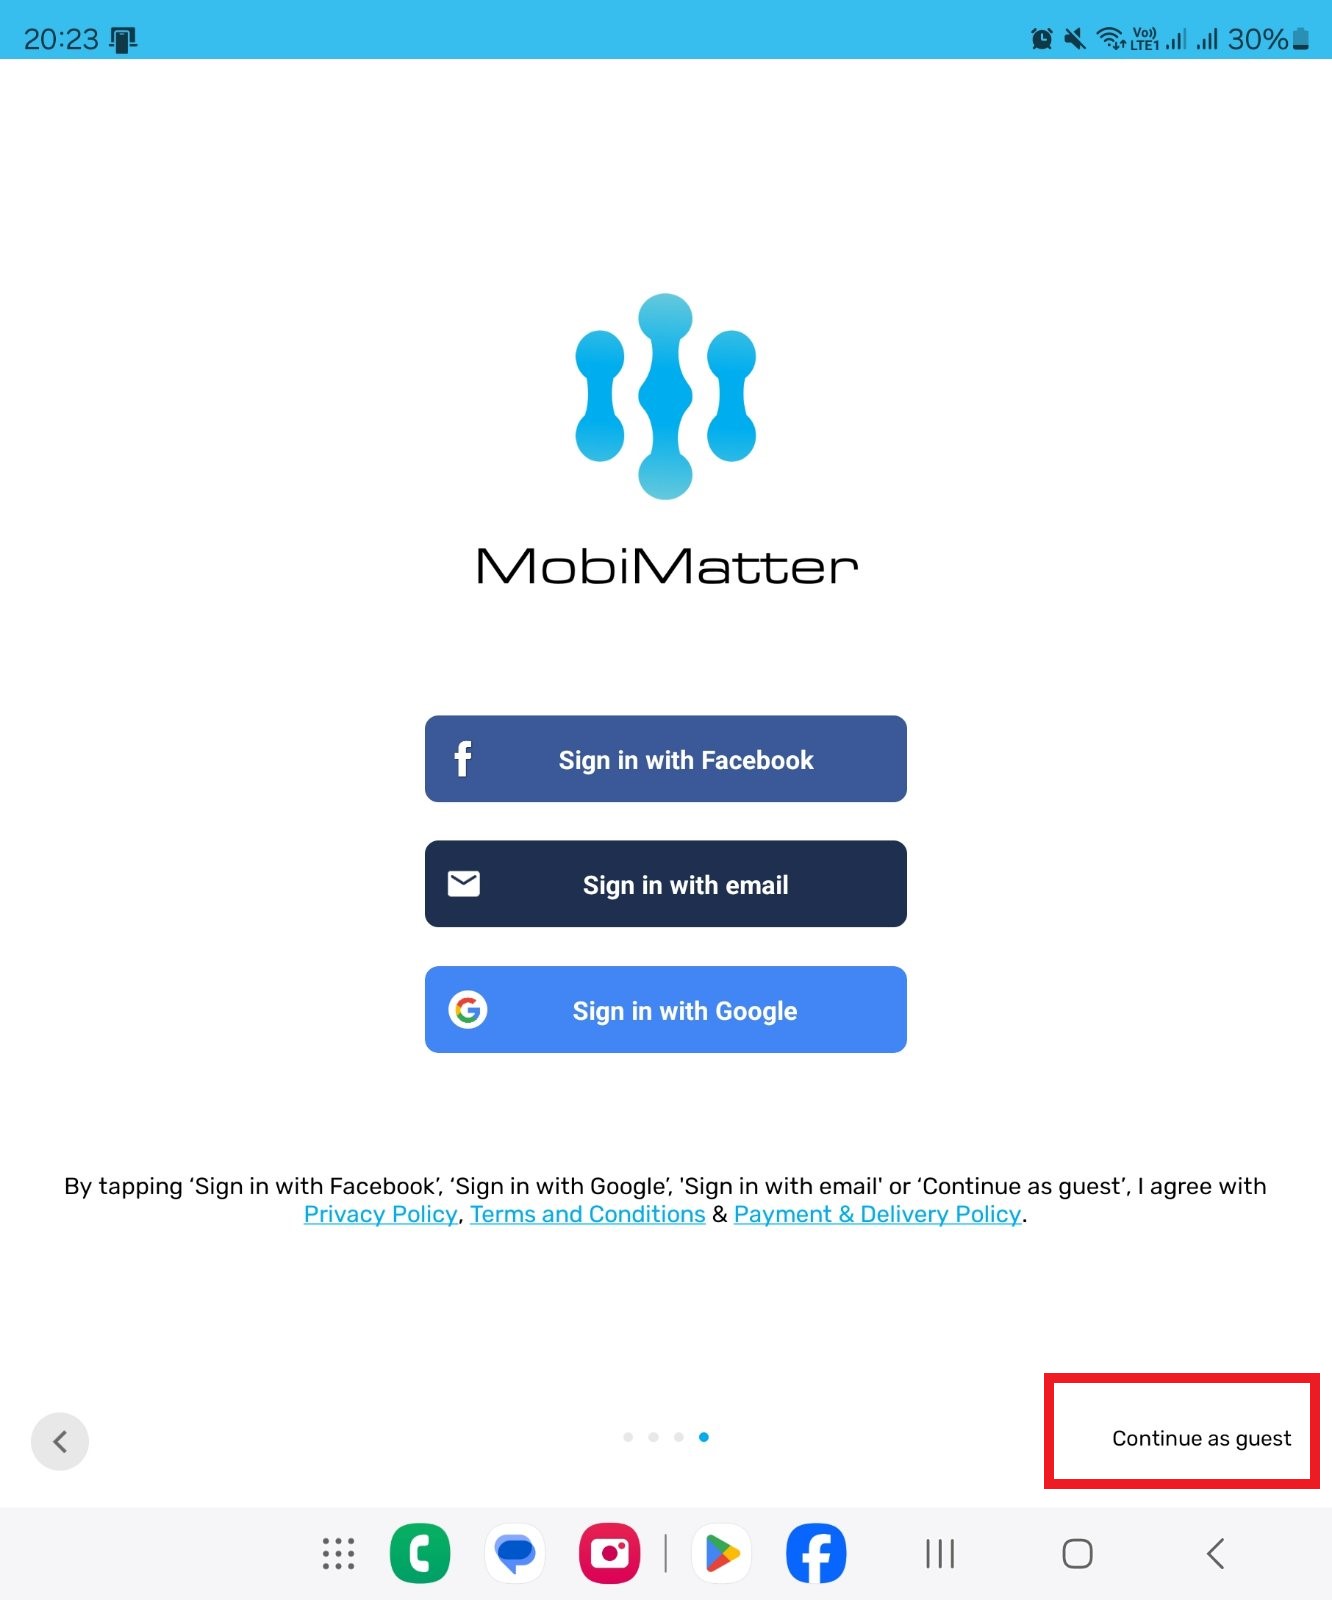 mobimatter app sign up